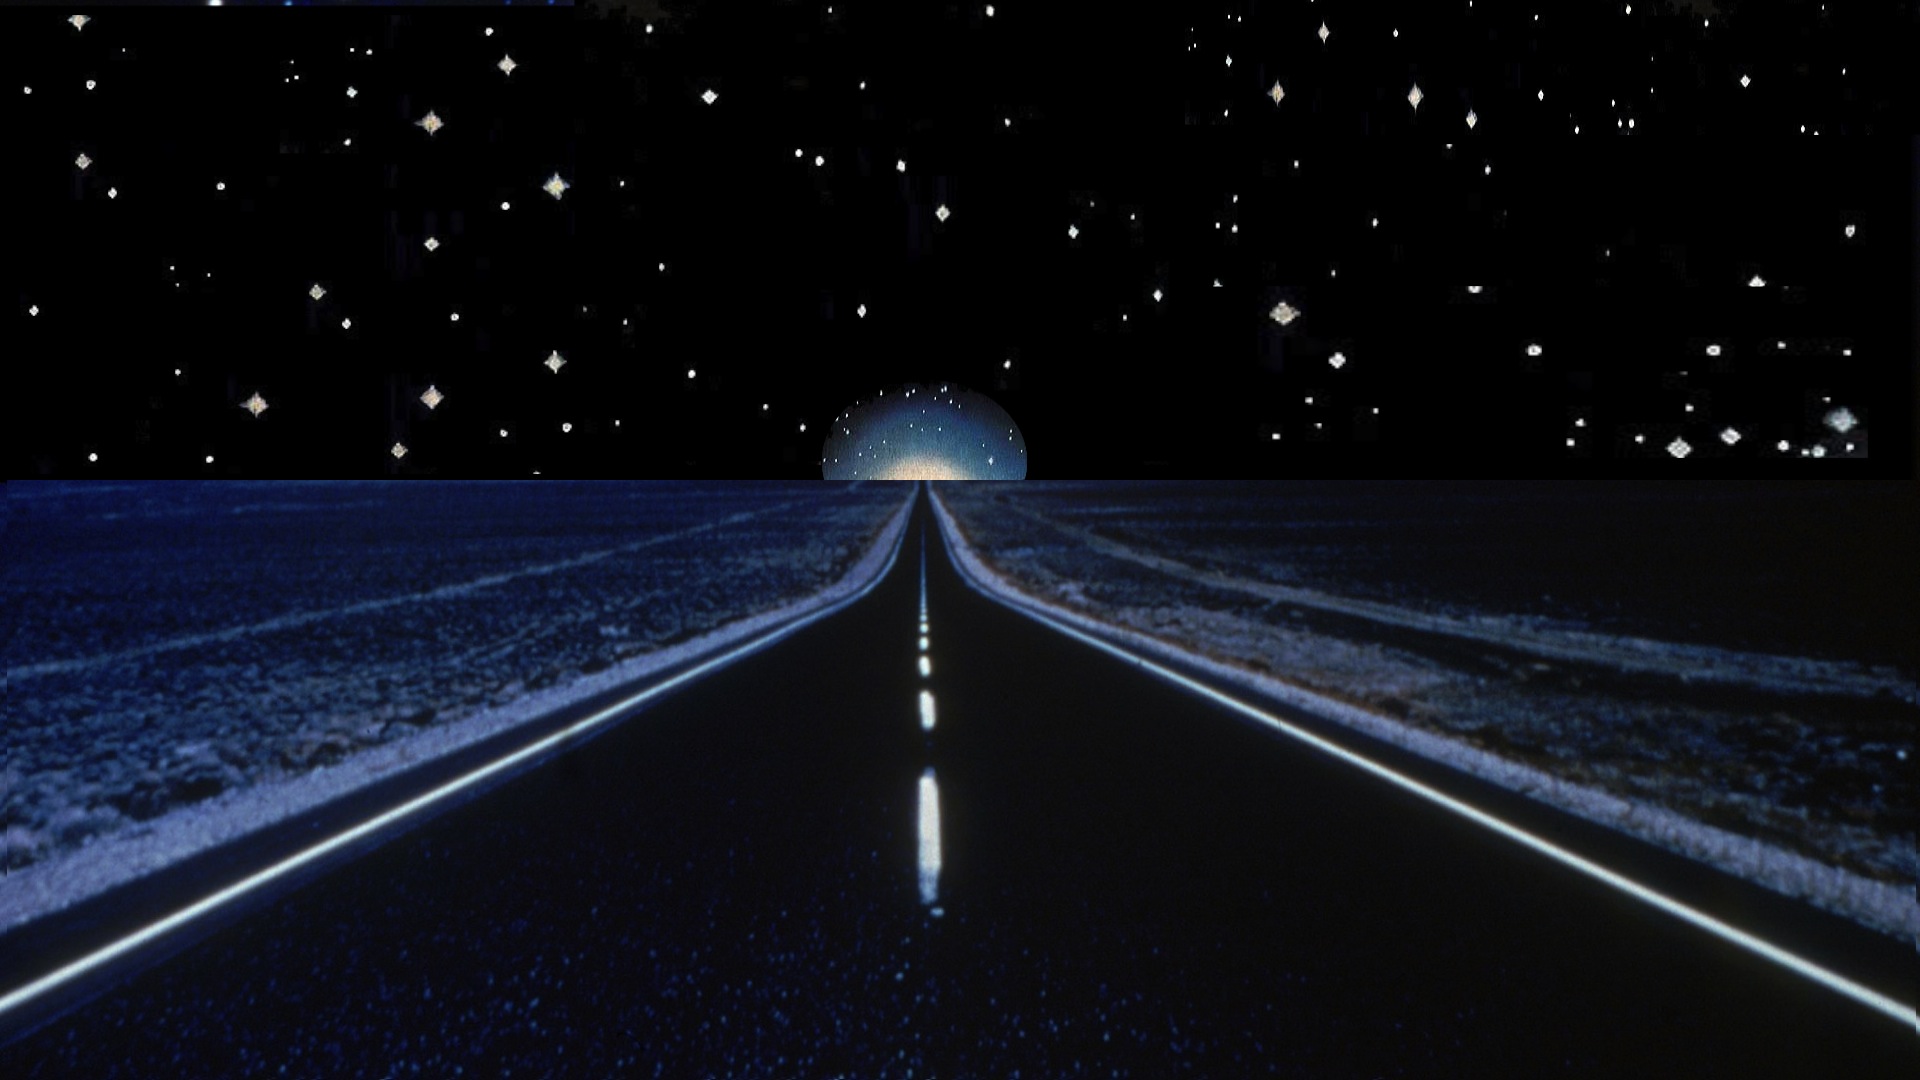 Яркая звезда путь трудный освещает. Ночная дорога. Трасса ночью. Ночное небо и дорога. Дорога к звездам.